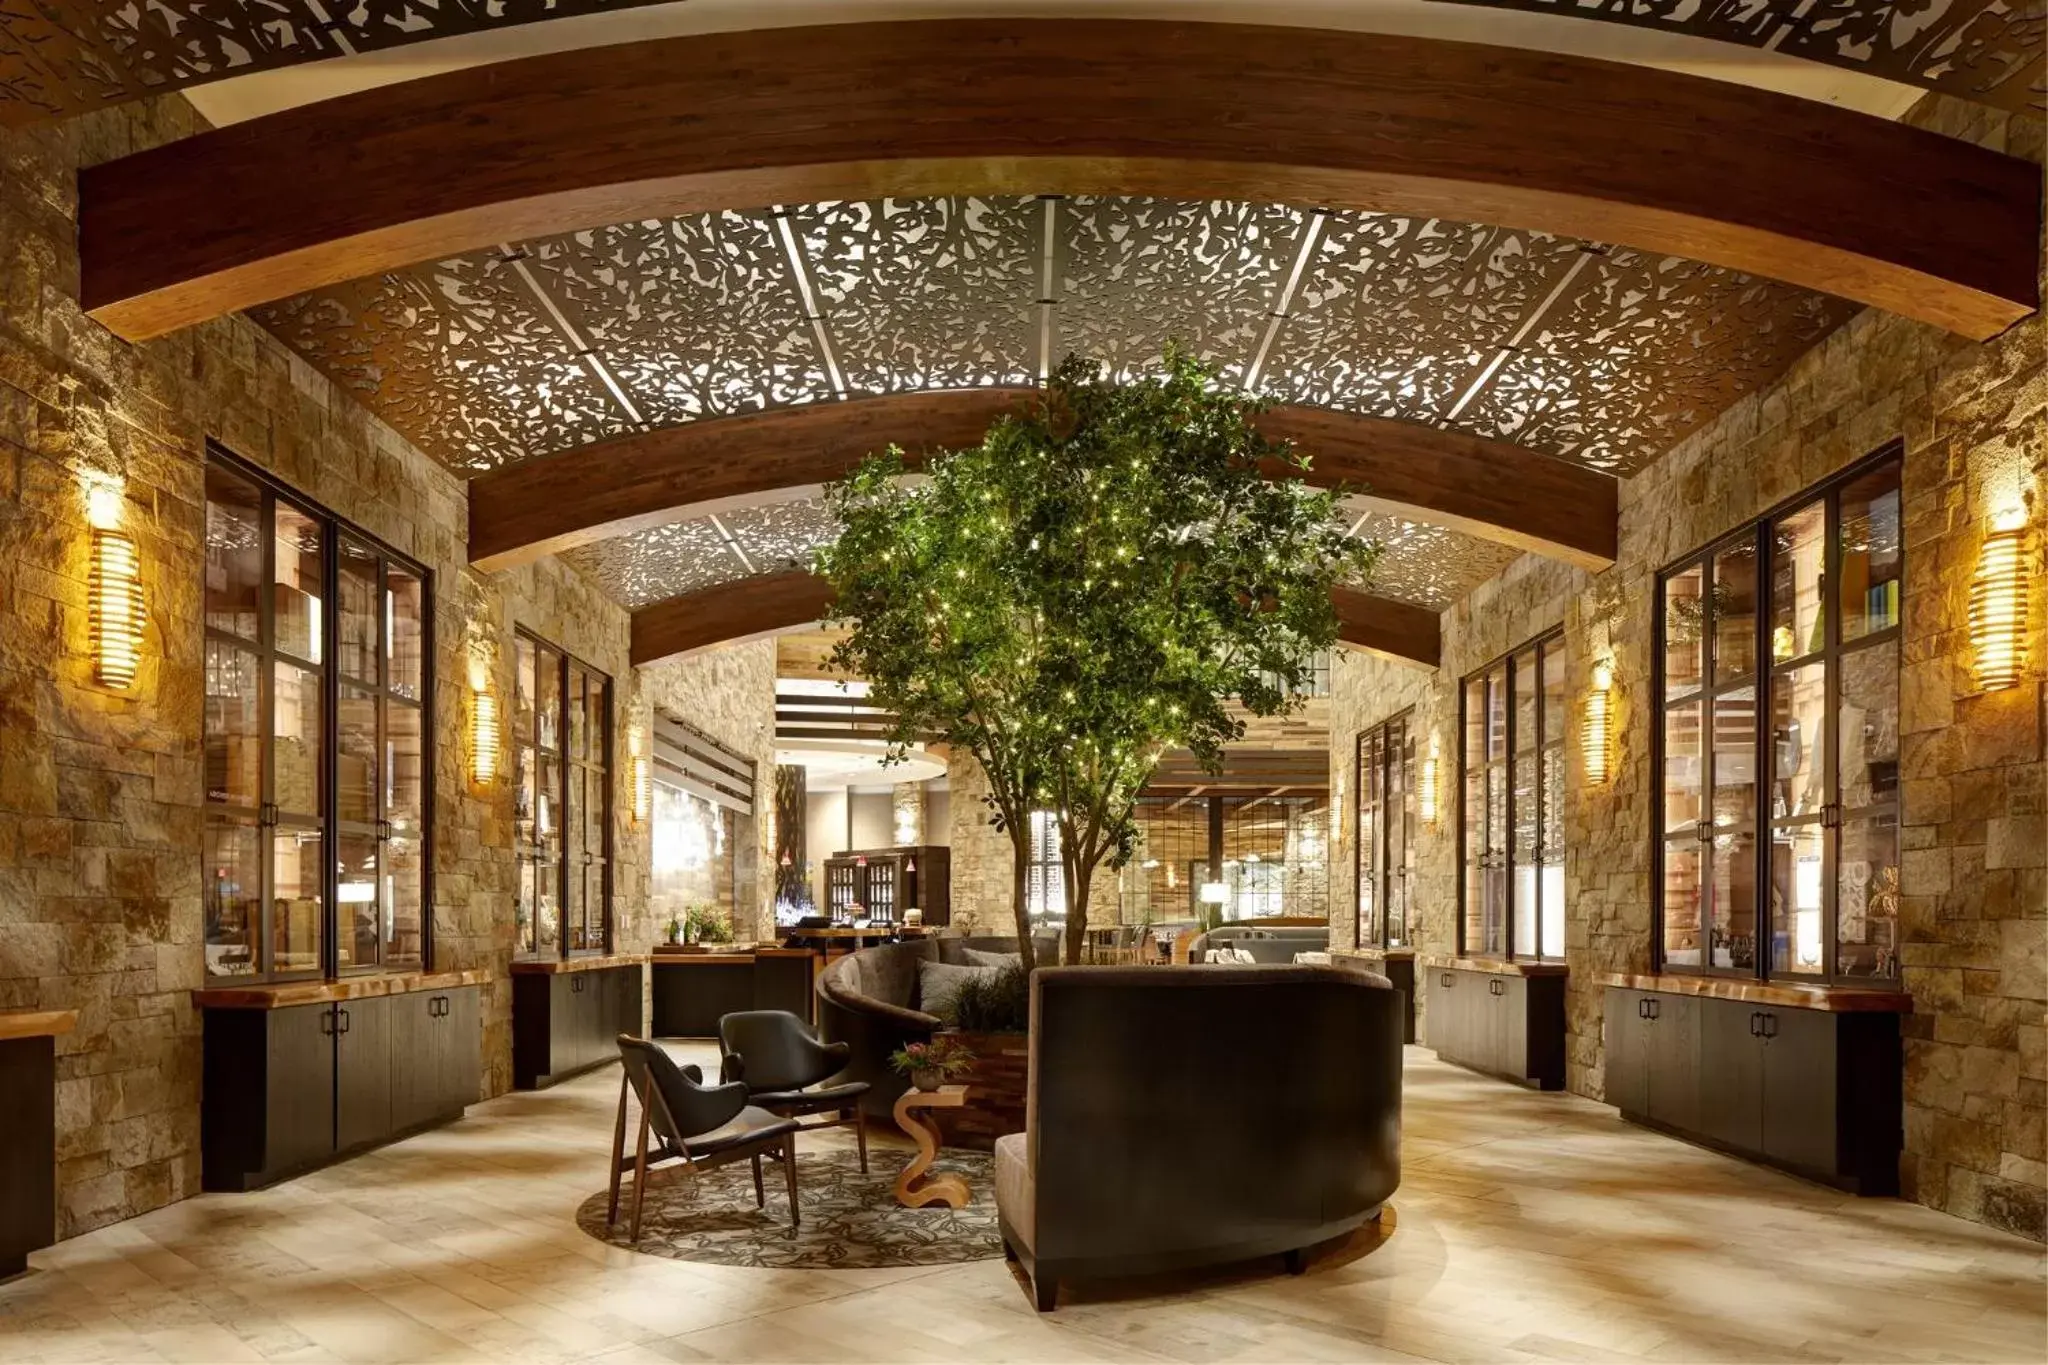 Lobby or reception, Lobby/Reception in Archer Hotel Napa